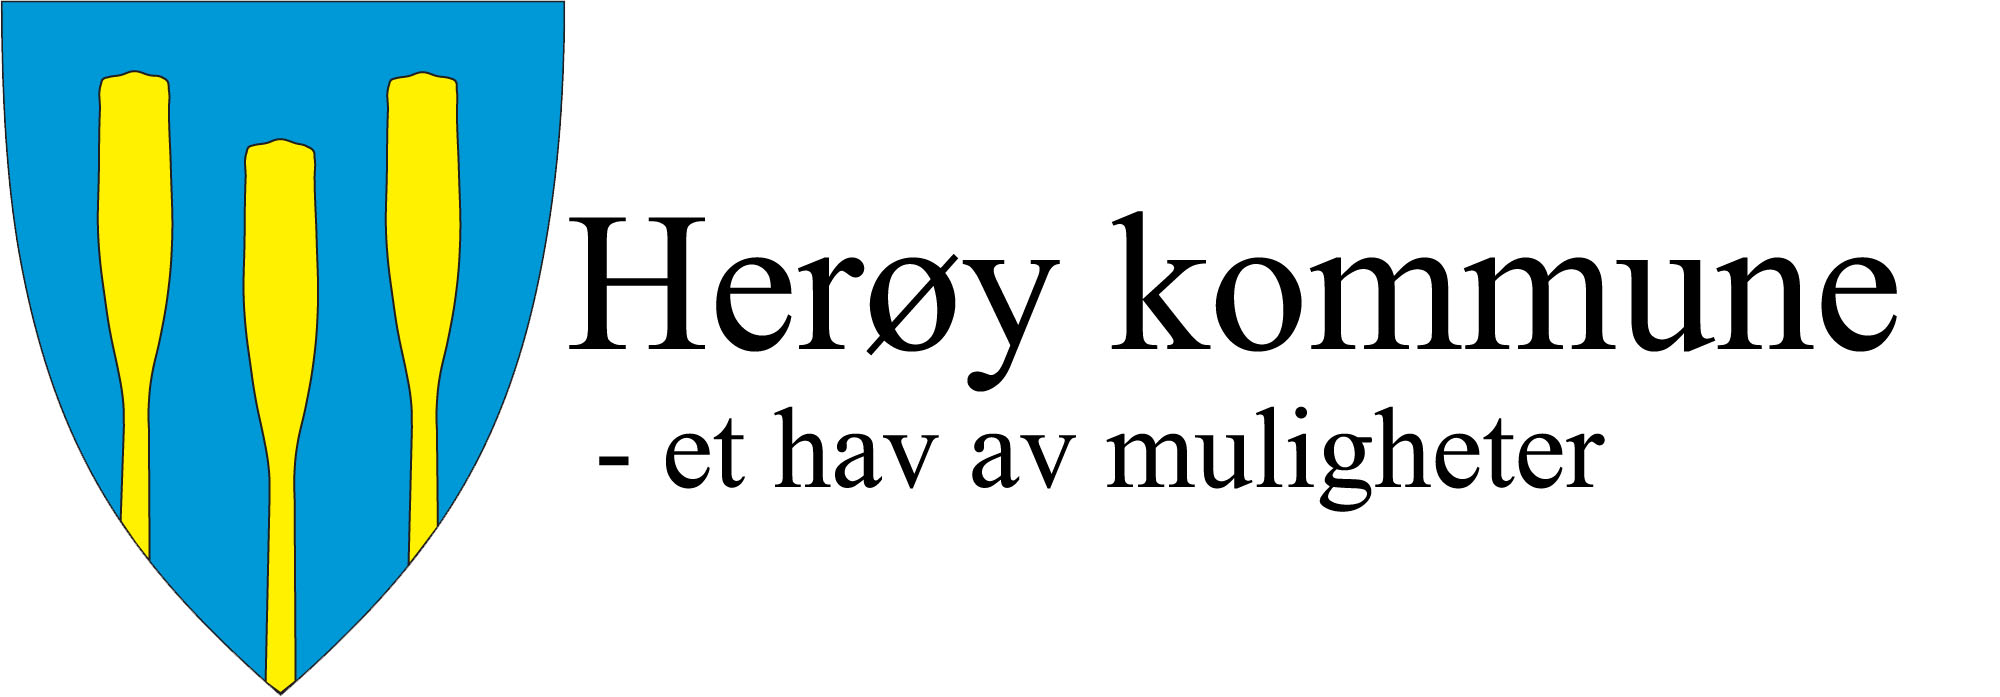 Herøy kommune Herøy kommune